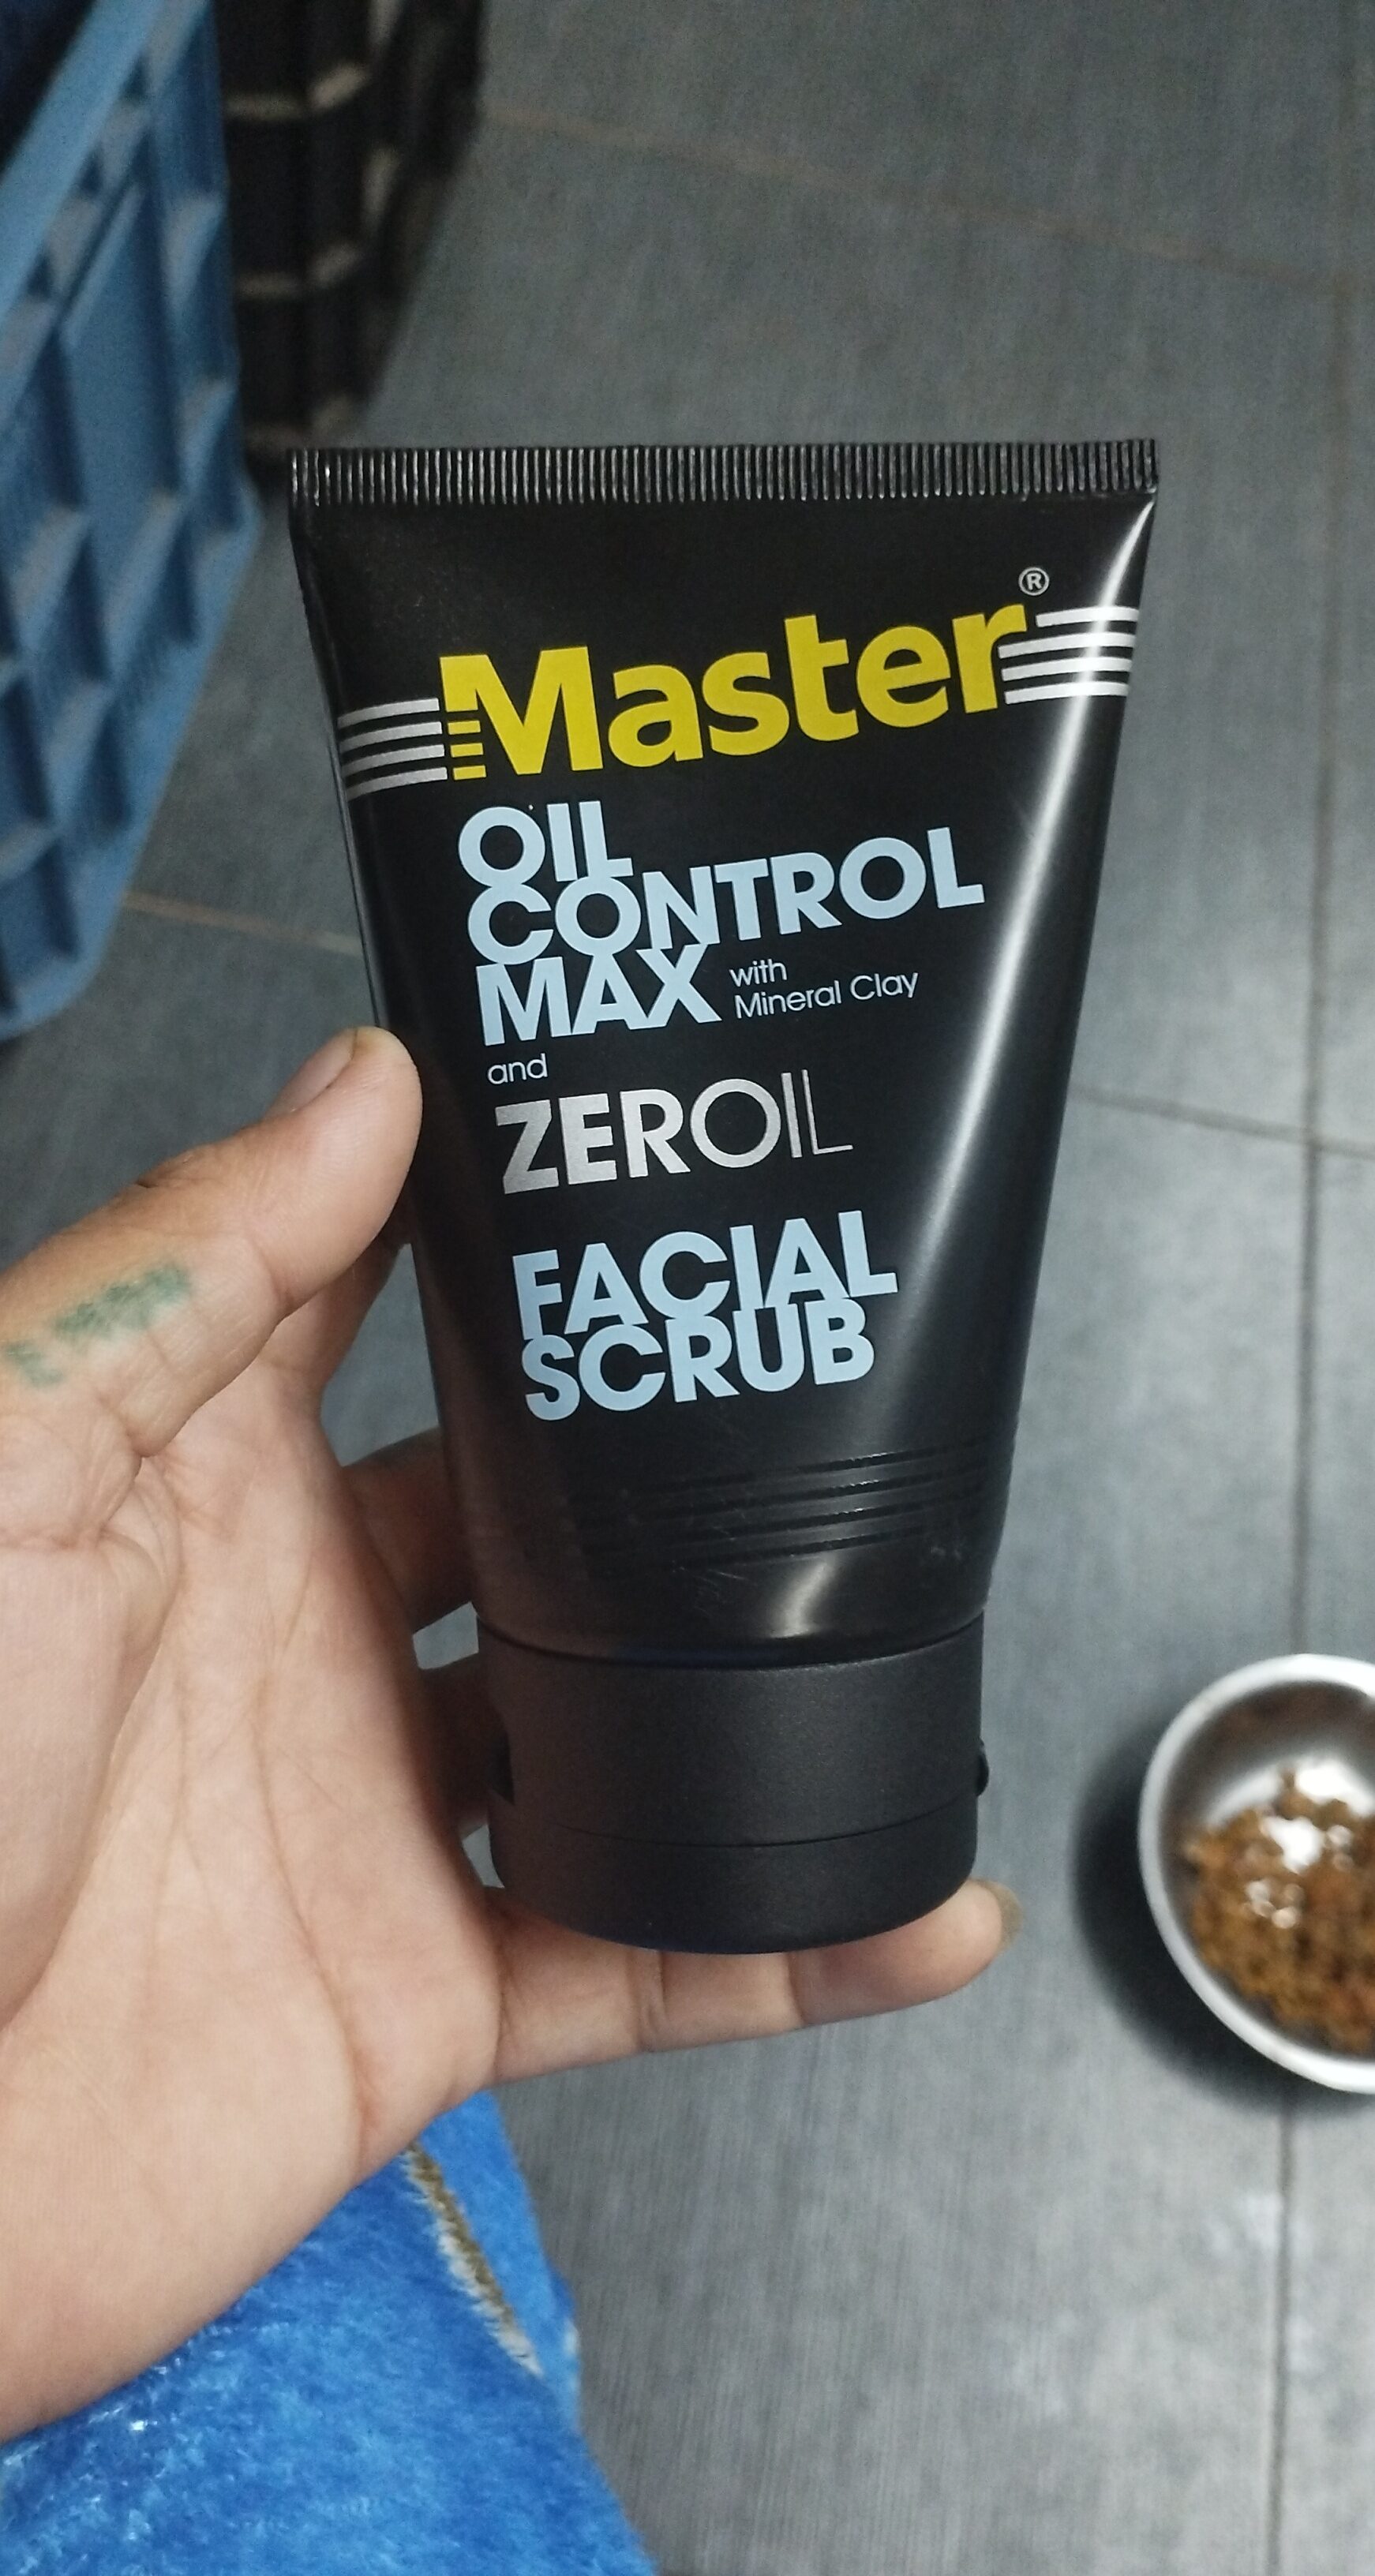 Master oil control max - 製品 - en